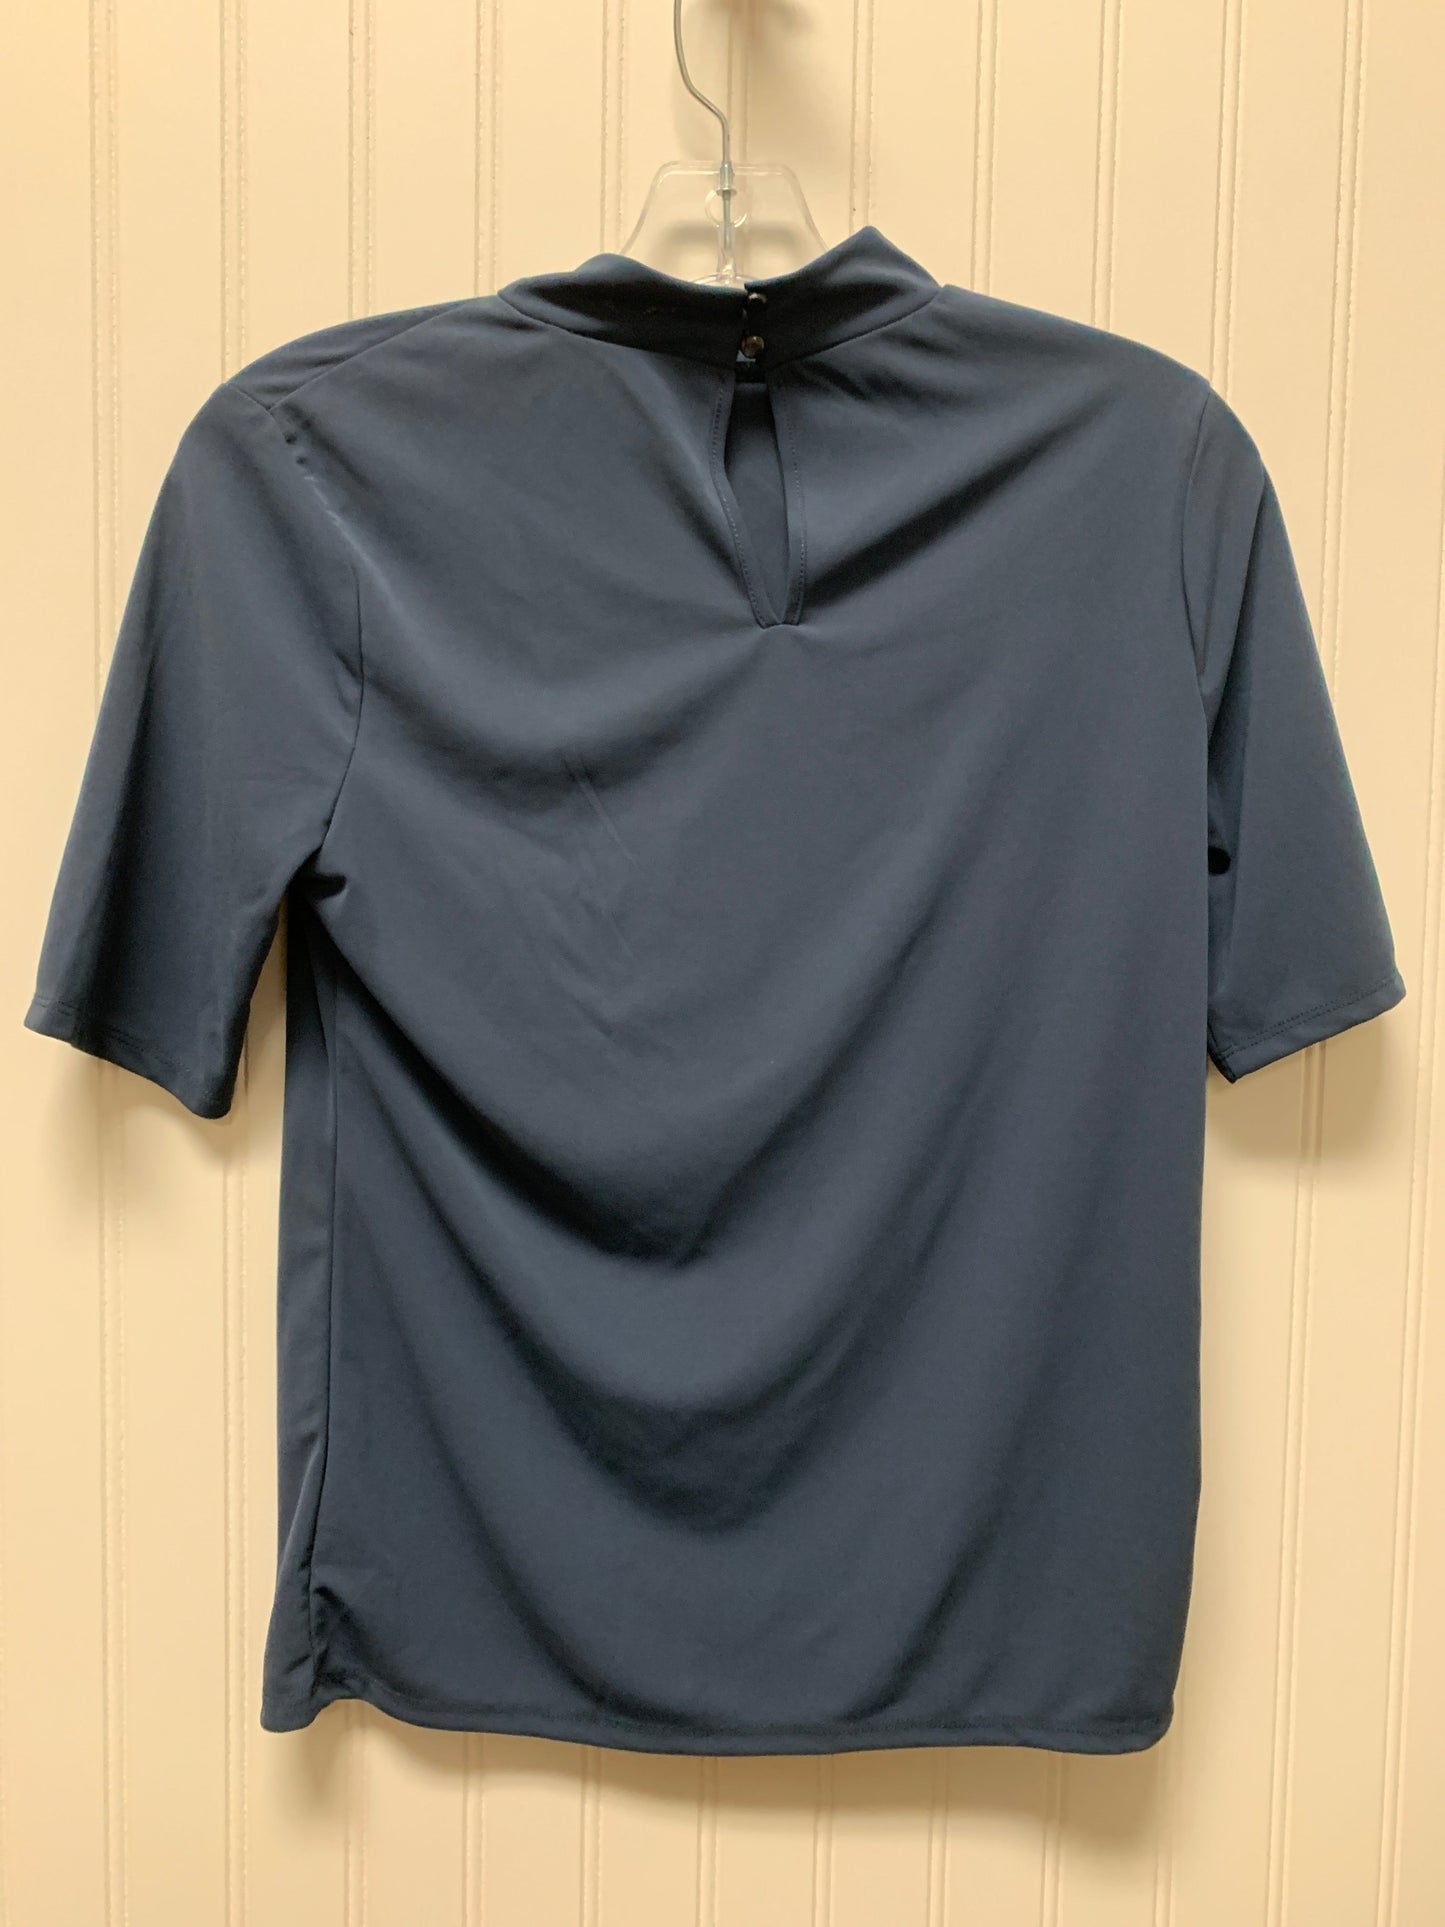 Blouse Short Sleeve By Worthington  Size: Xs